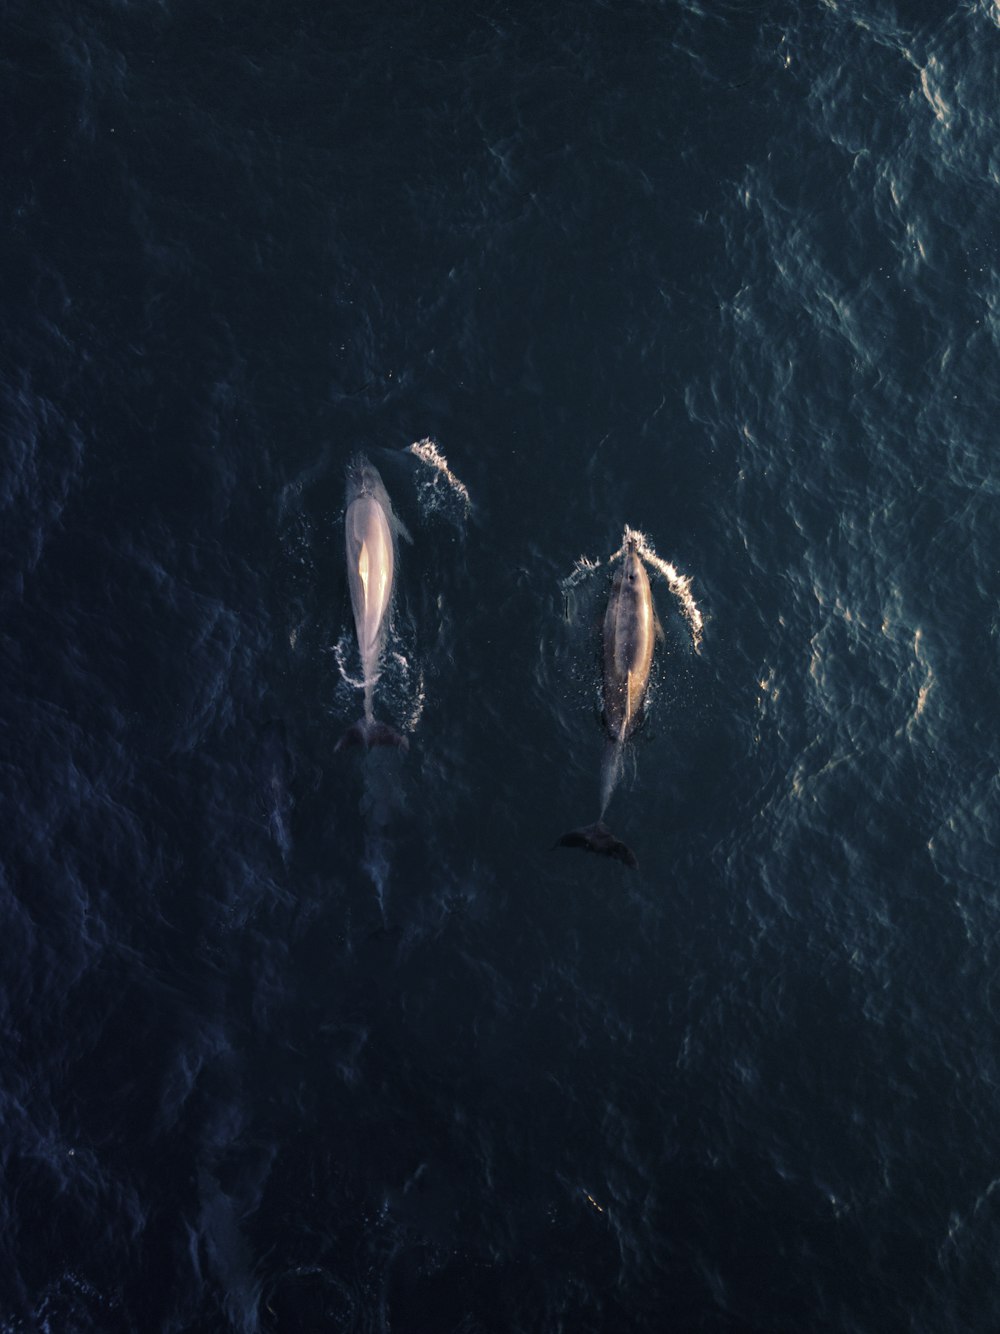 물속에 있는 두 마리의 돌고래의 조감도 사진